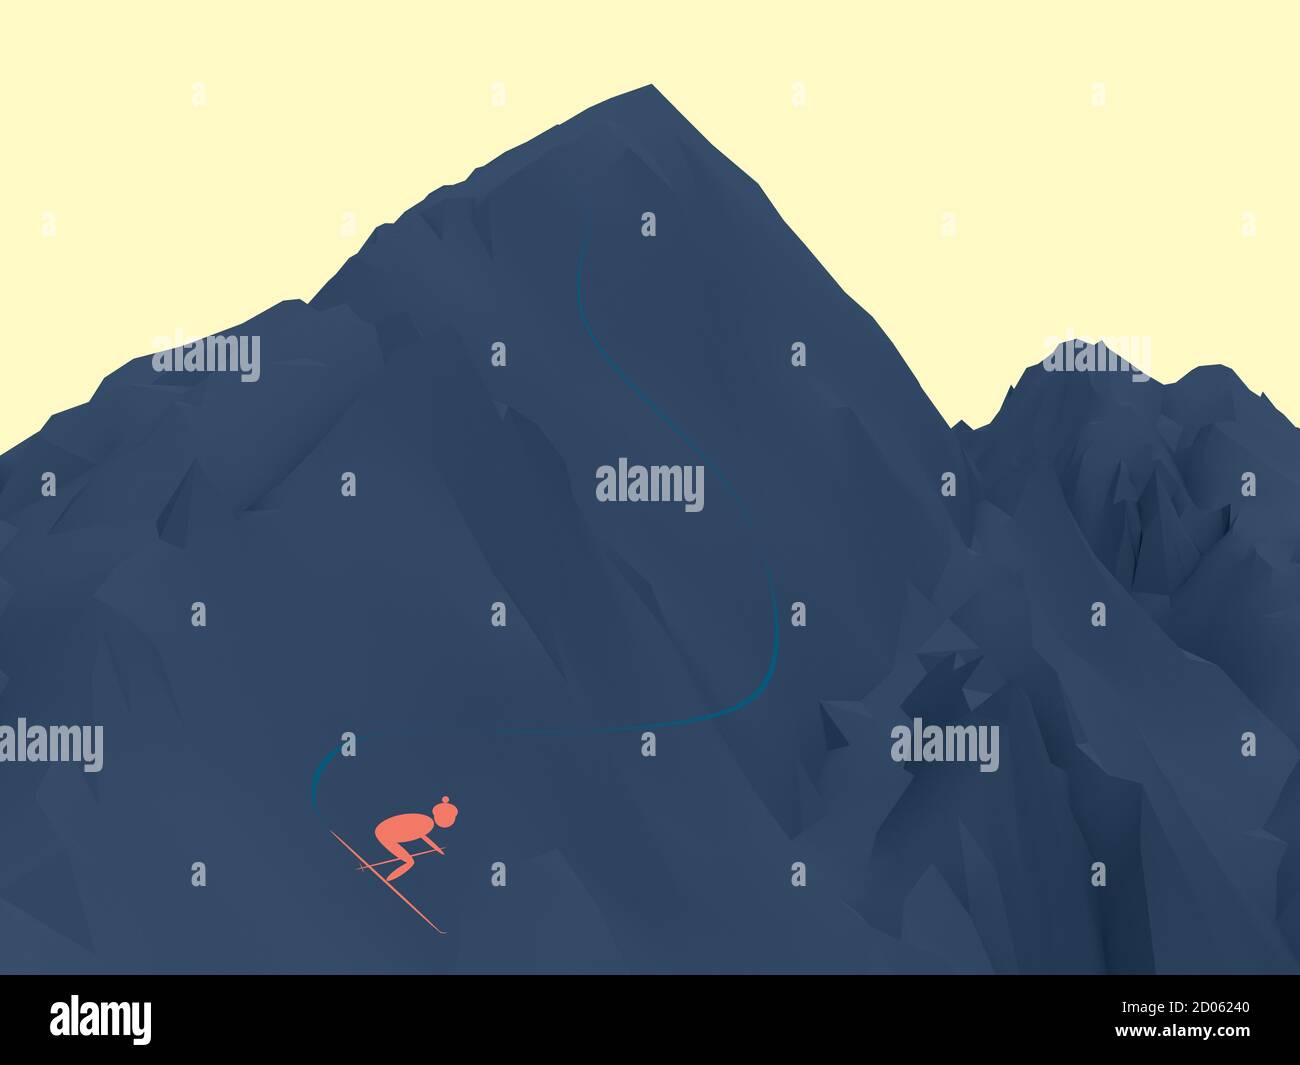 Dreidimensionale Darstellung von dunkelblauem Berg auf gelbem Hintergrund. Einfache Illustration eines pfirsichfarbenen Skifahrers, der den Berg hinunterfährt. 3D-Konzept Stockfoto